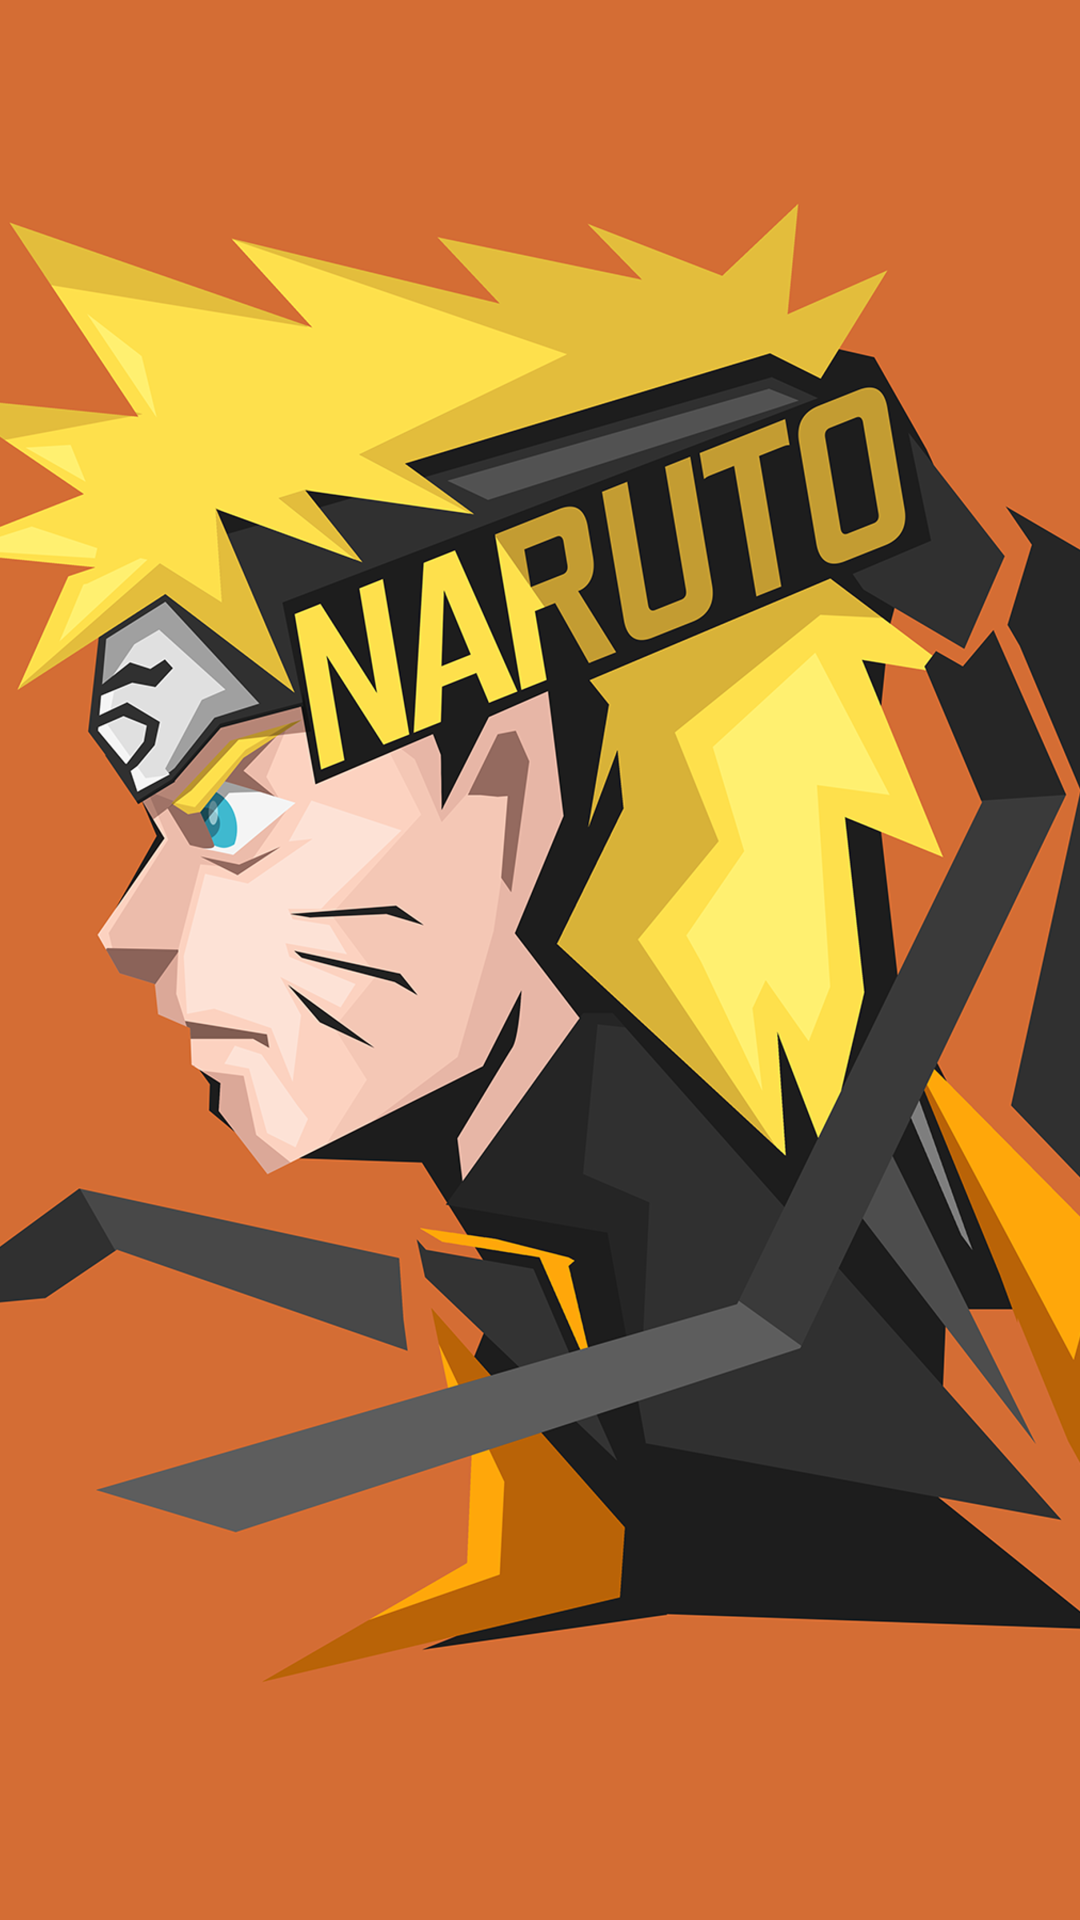 Naruto Uzumaki: Từng là cậu bé phải chịu đựng biết bao thử thách, Uzumaki Naruto đã vượt qua tất cả để trở thành một nhân vật anh hùng trong loạt truyện Naruto. Hãy cùng xem lại những hành trình và chiến đấu đầy ấn tượng của Naruto qua các bức hình vô cùng sống động.